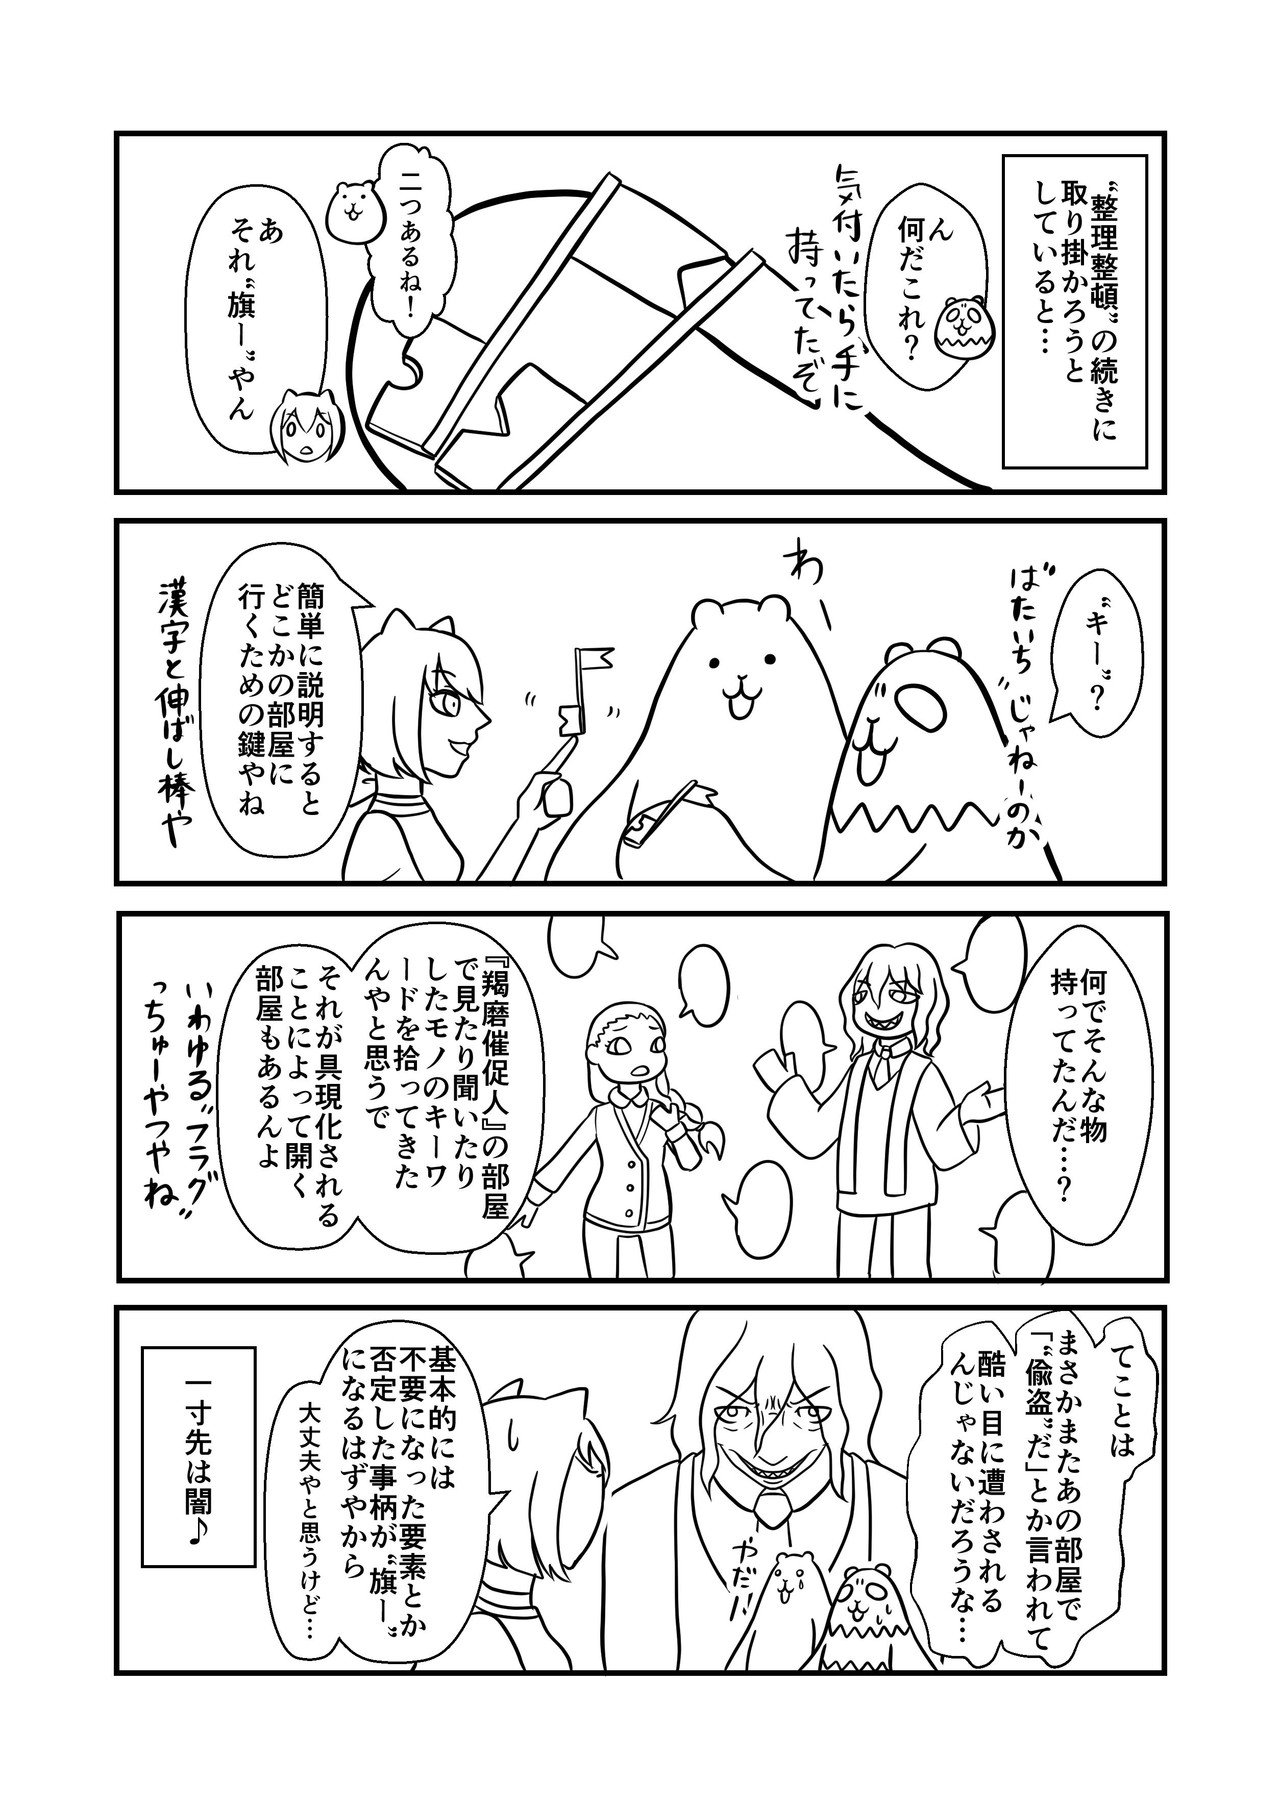 コミック4_出力-4_010